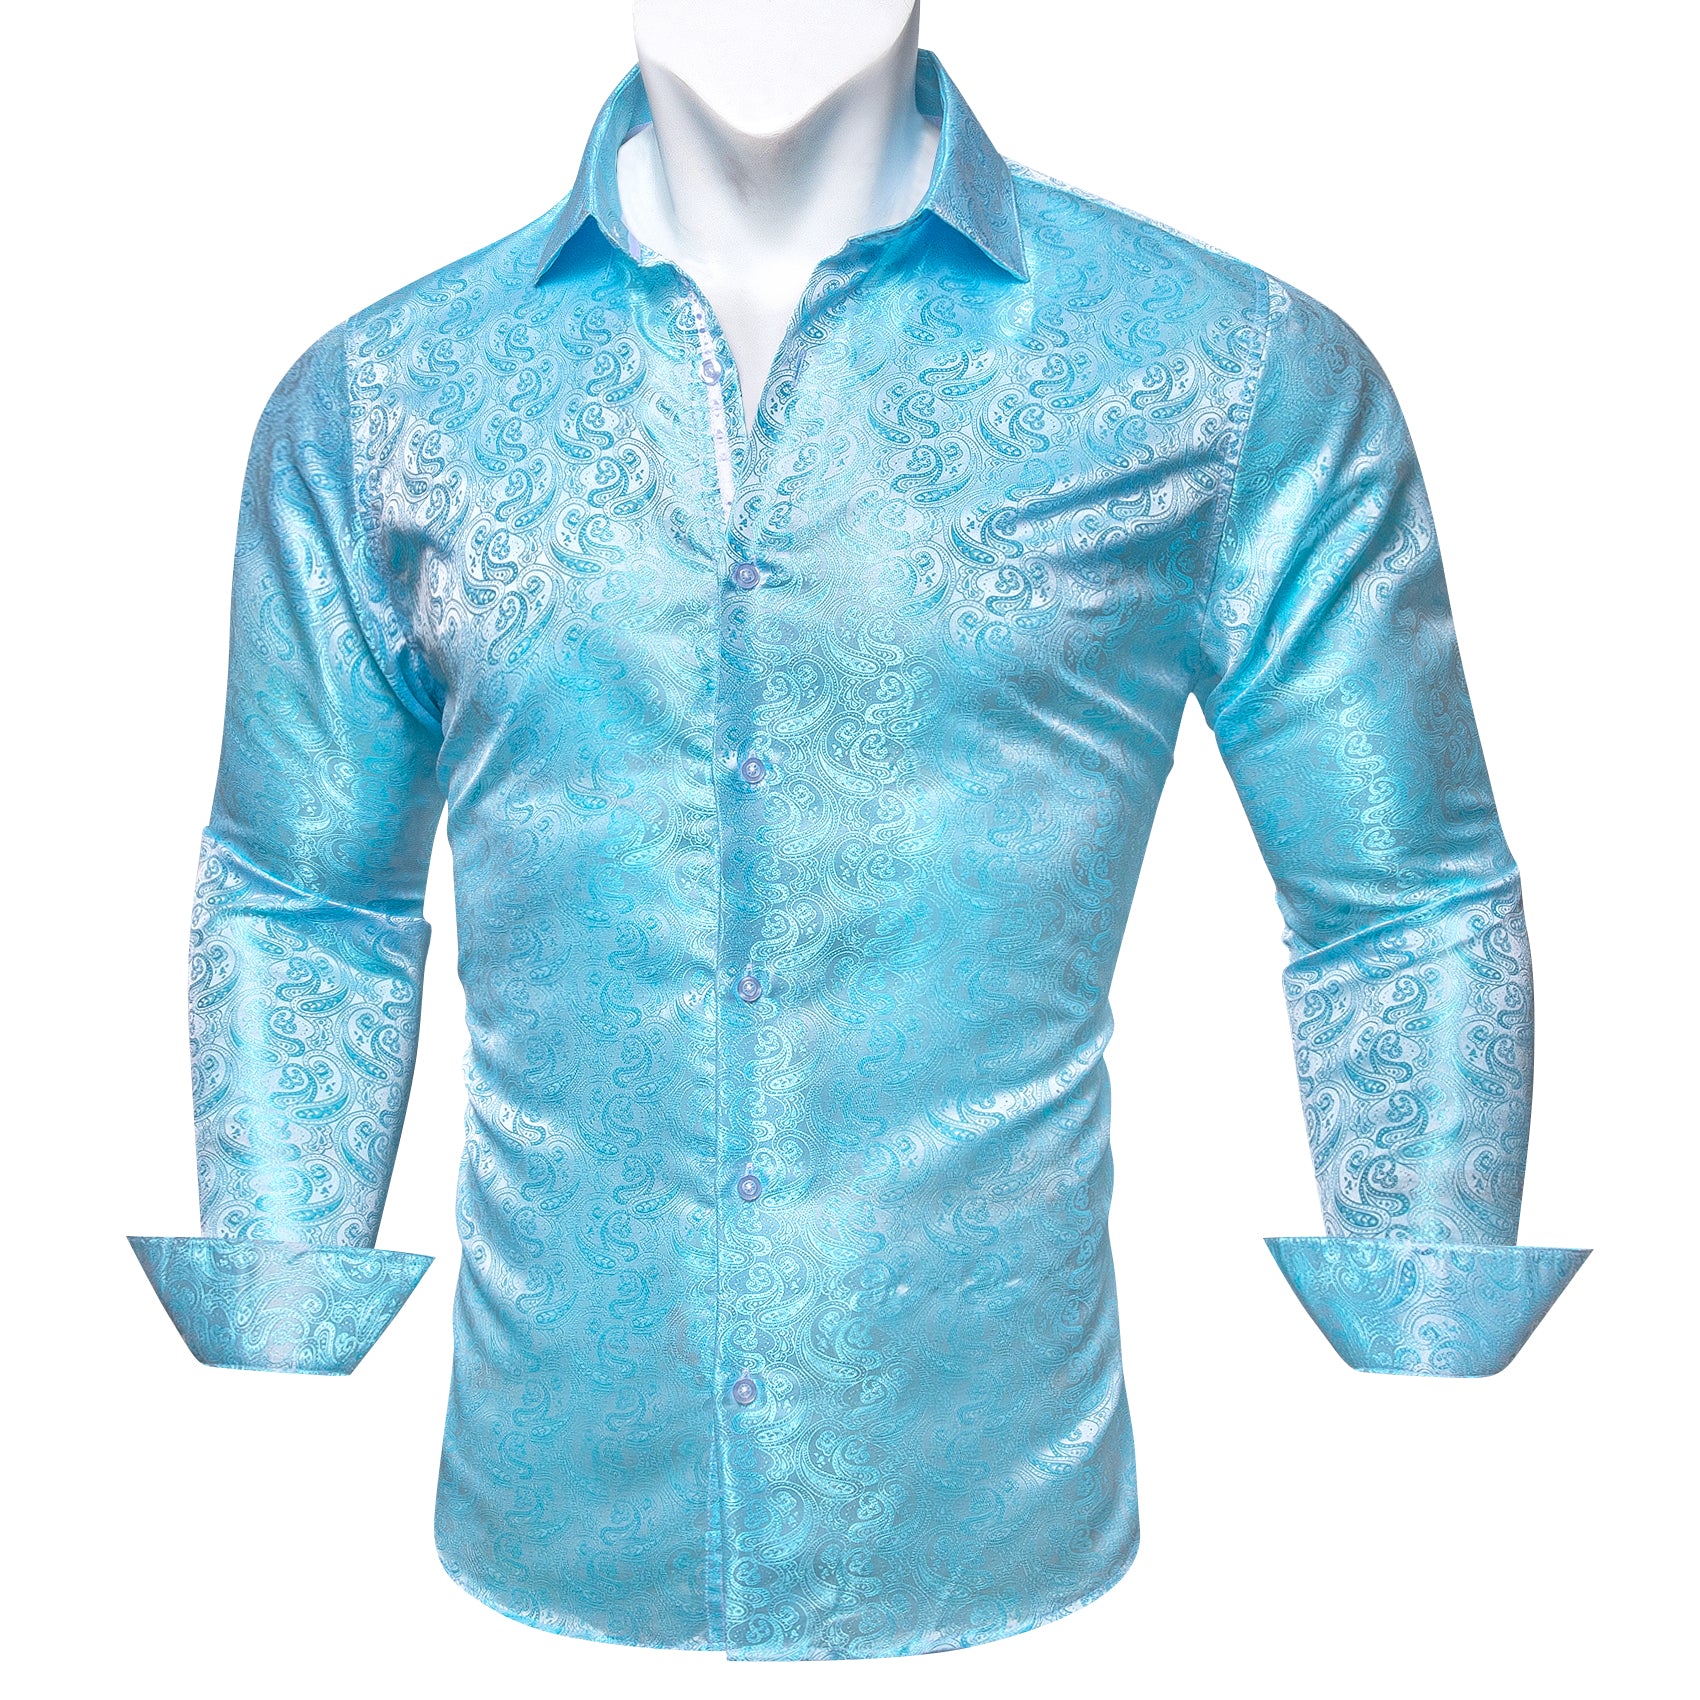 dress hirt blue shirt for men 